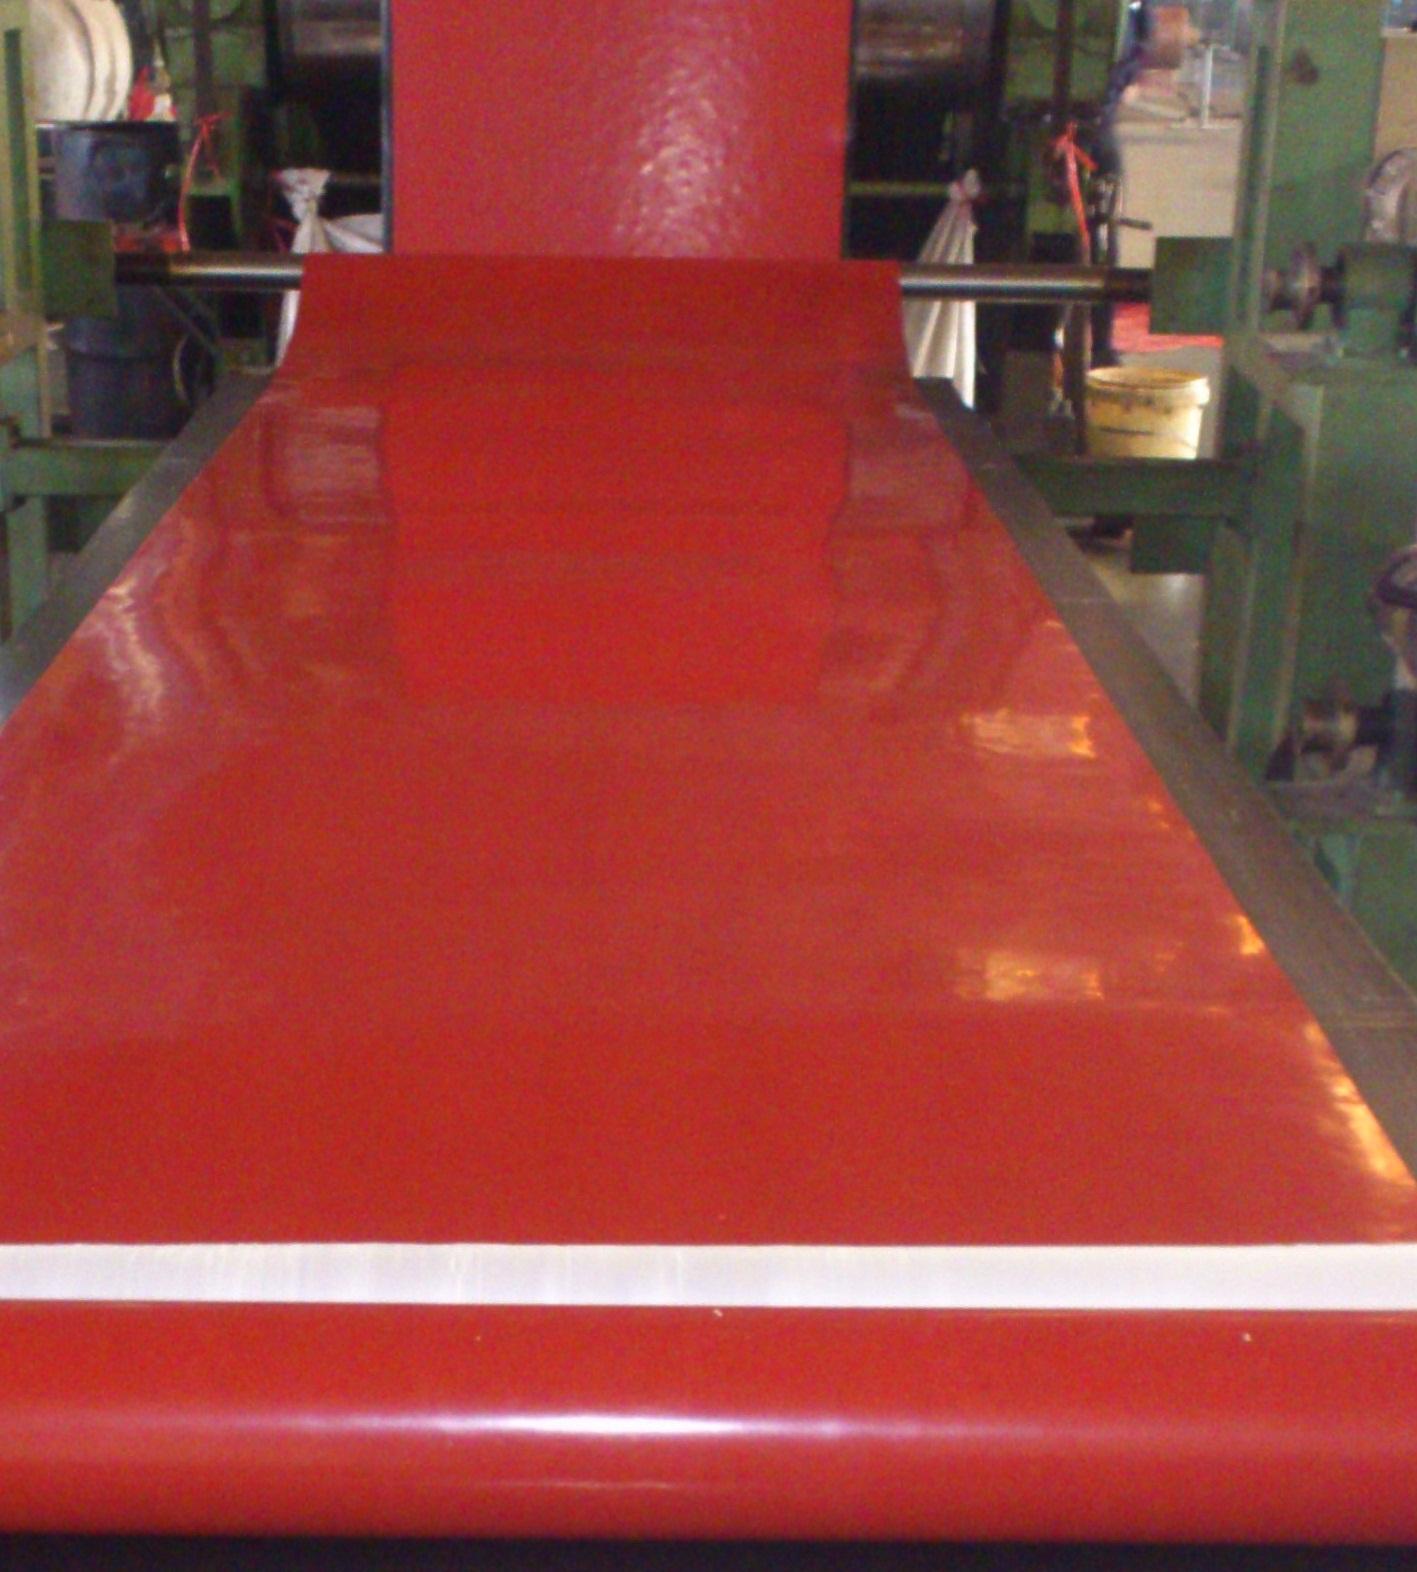 红色绝缘胶垫生产车间